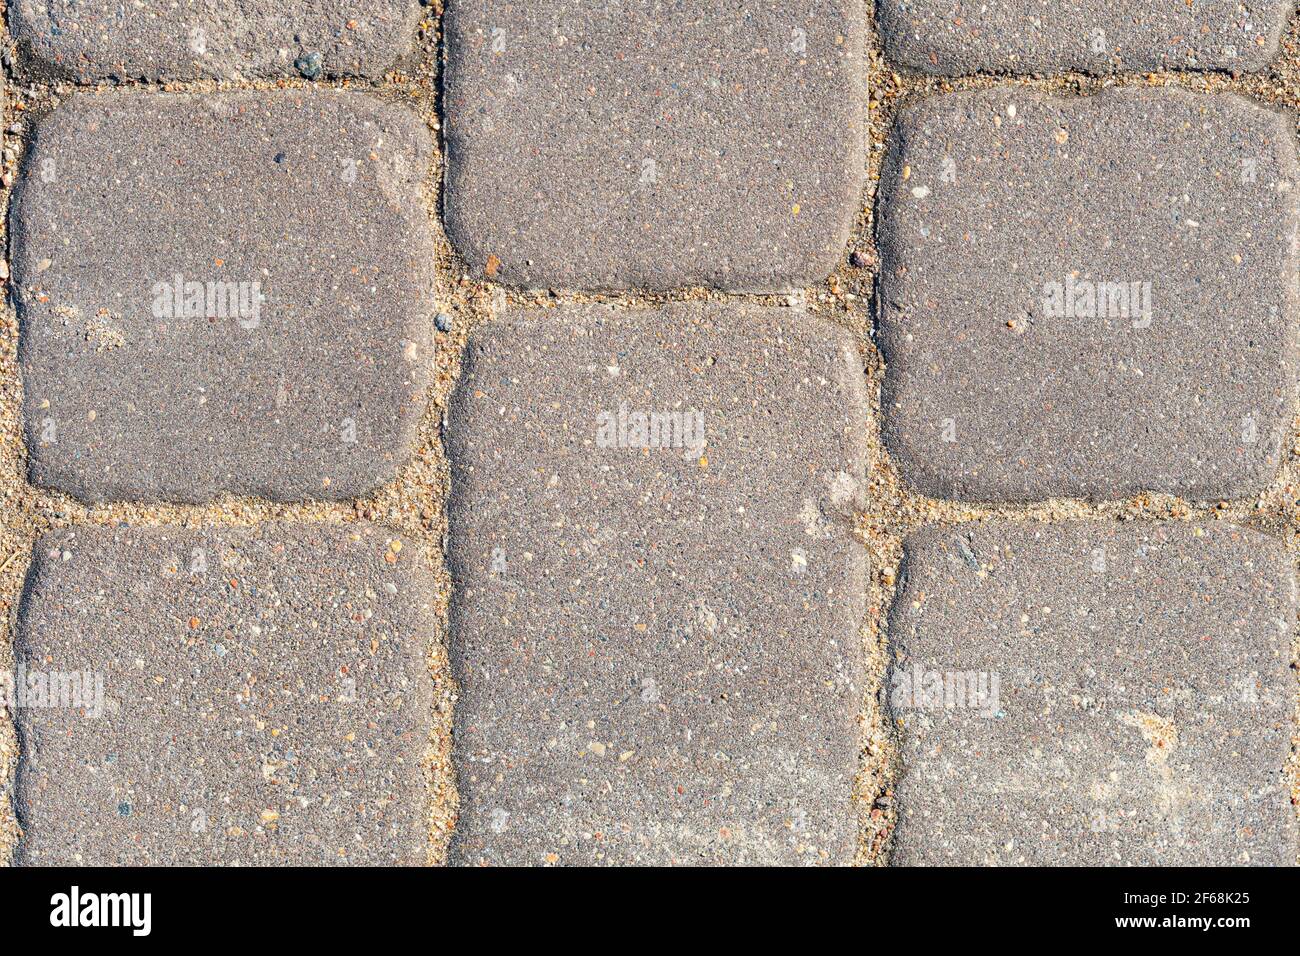 Primo piano delle lastre di pavimentazione, consistenza della pietra di pavimentazione in calcestruzzo, fondo di pietra Foto Stock